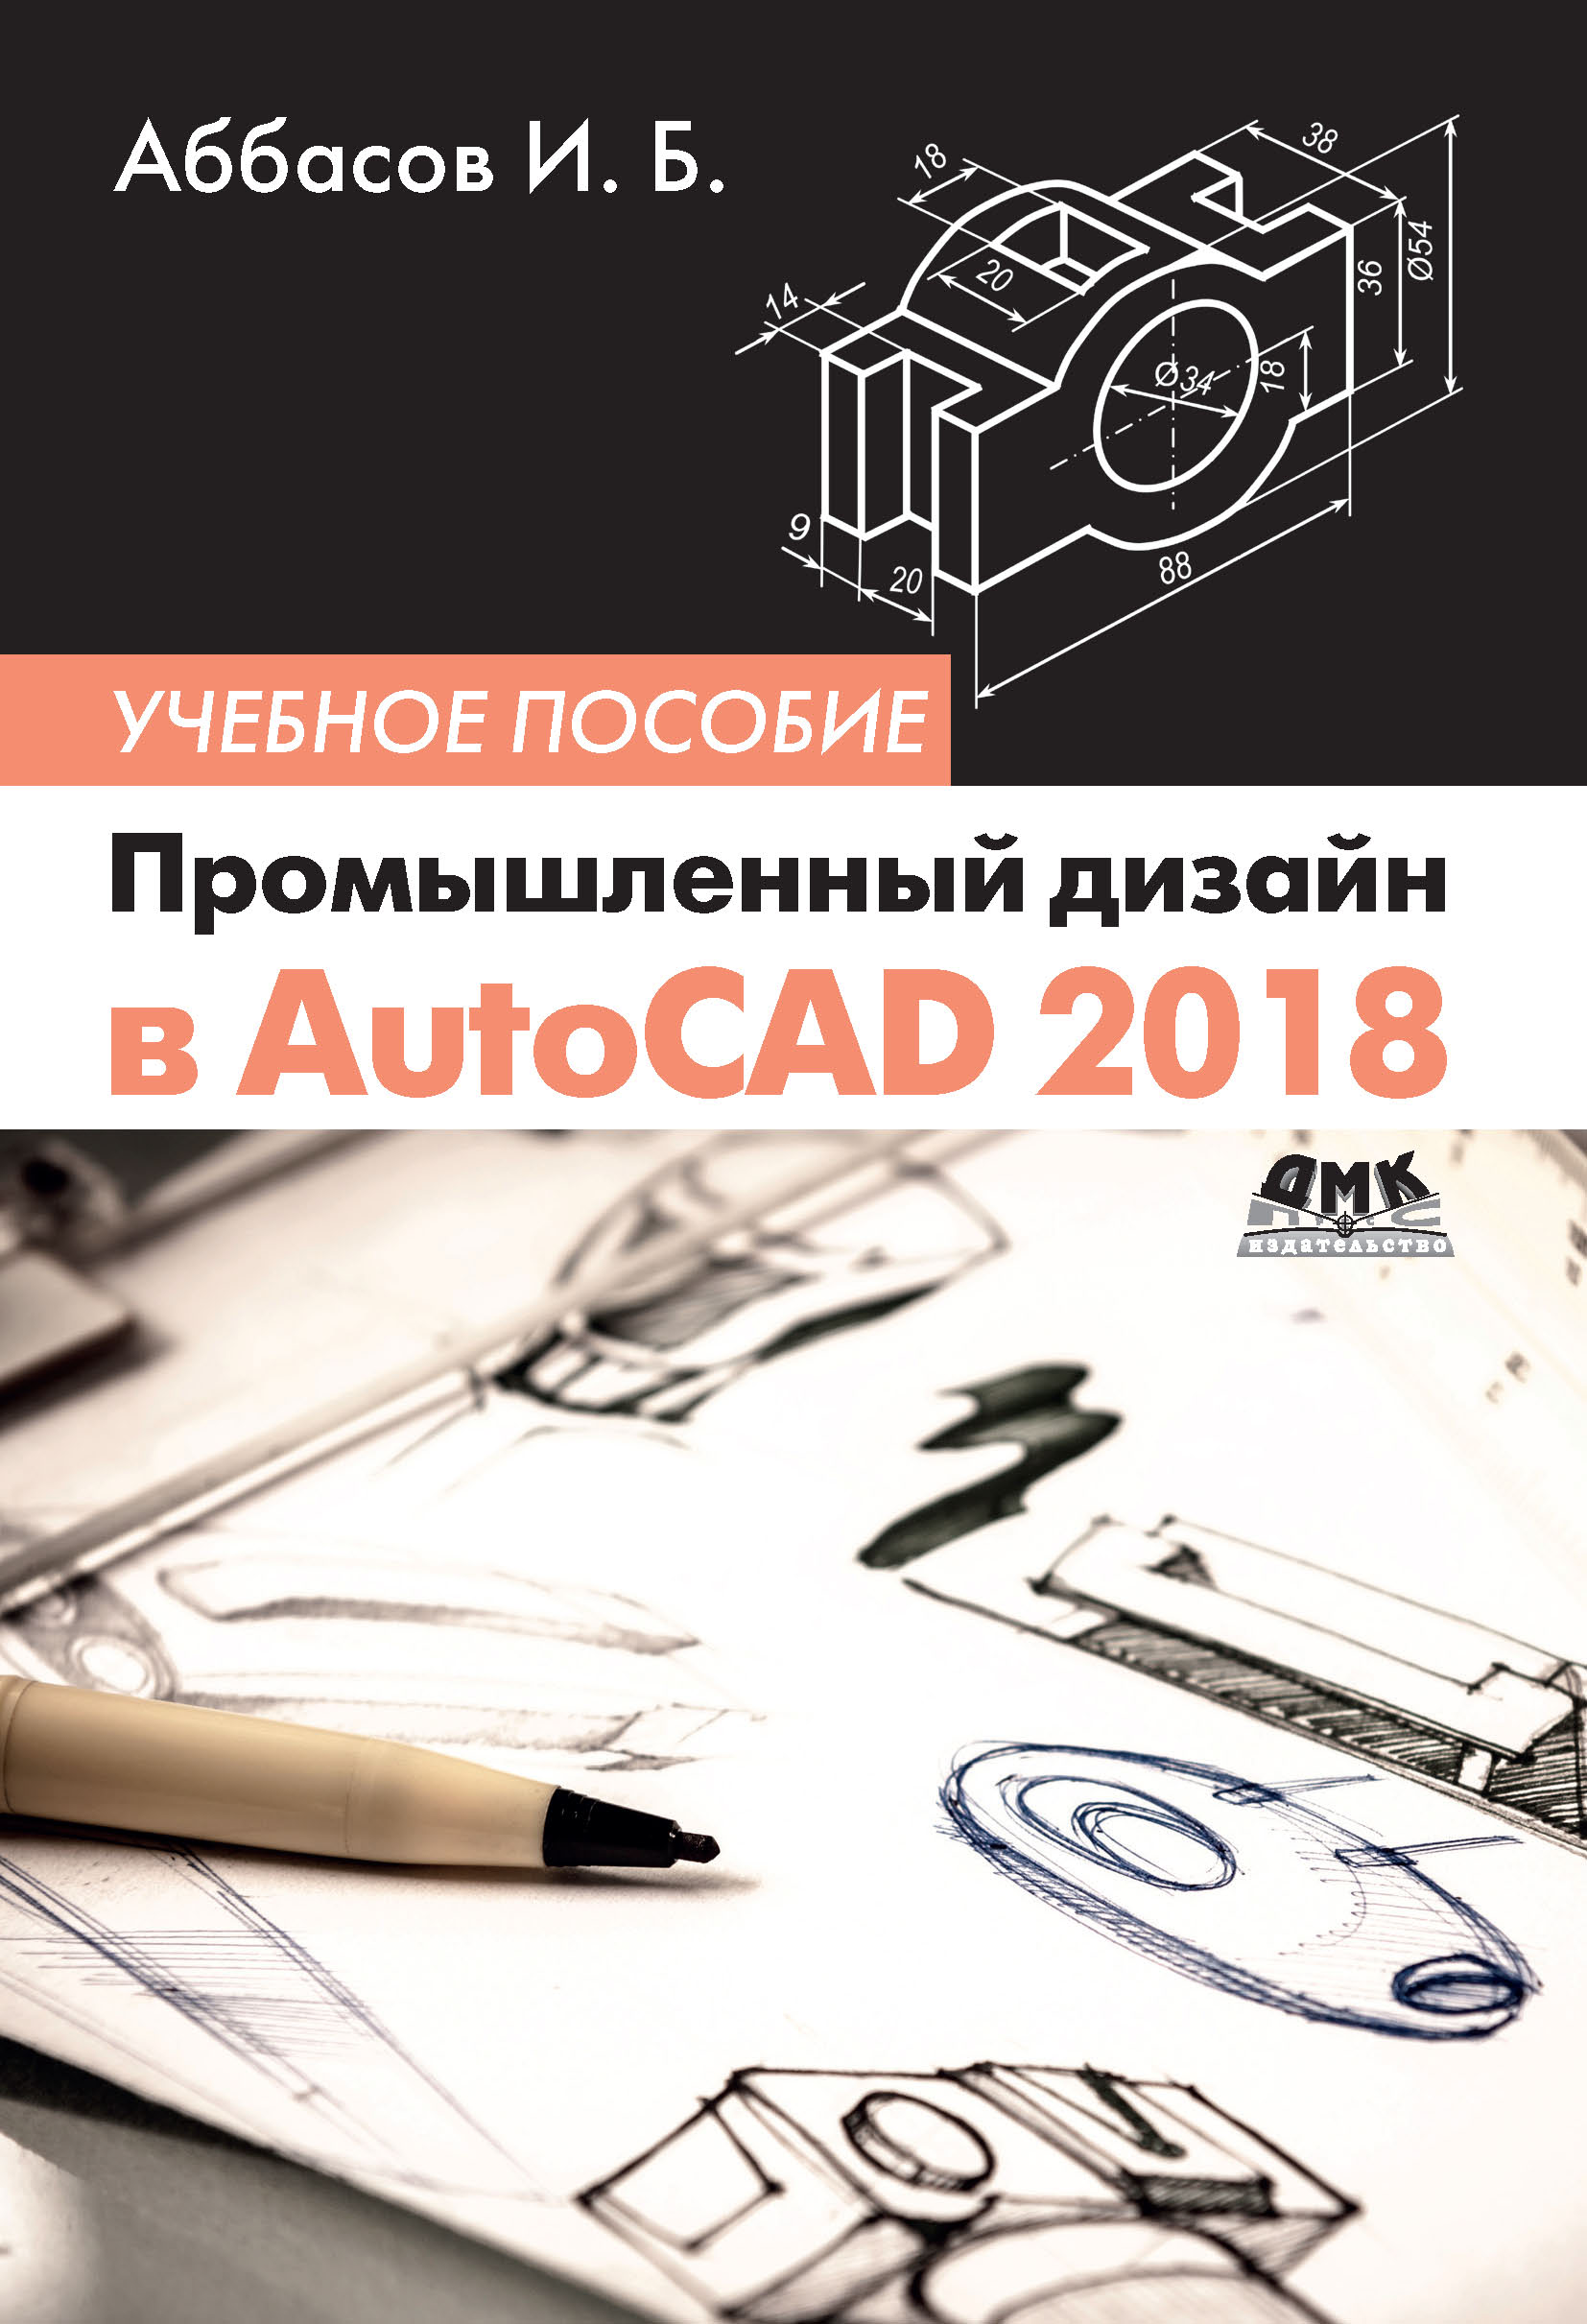 Книга  Промышленный дизайн в AutoCAD 2018 созданная И. Б. Аббасов может относится к жанру программы, проектирование. Стоимость электронной книги Промышленный дизайн в AutoCAD 2018 с идентификатором 45670304 составляет 349.00 руб.